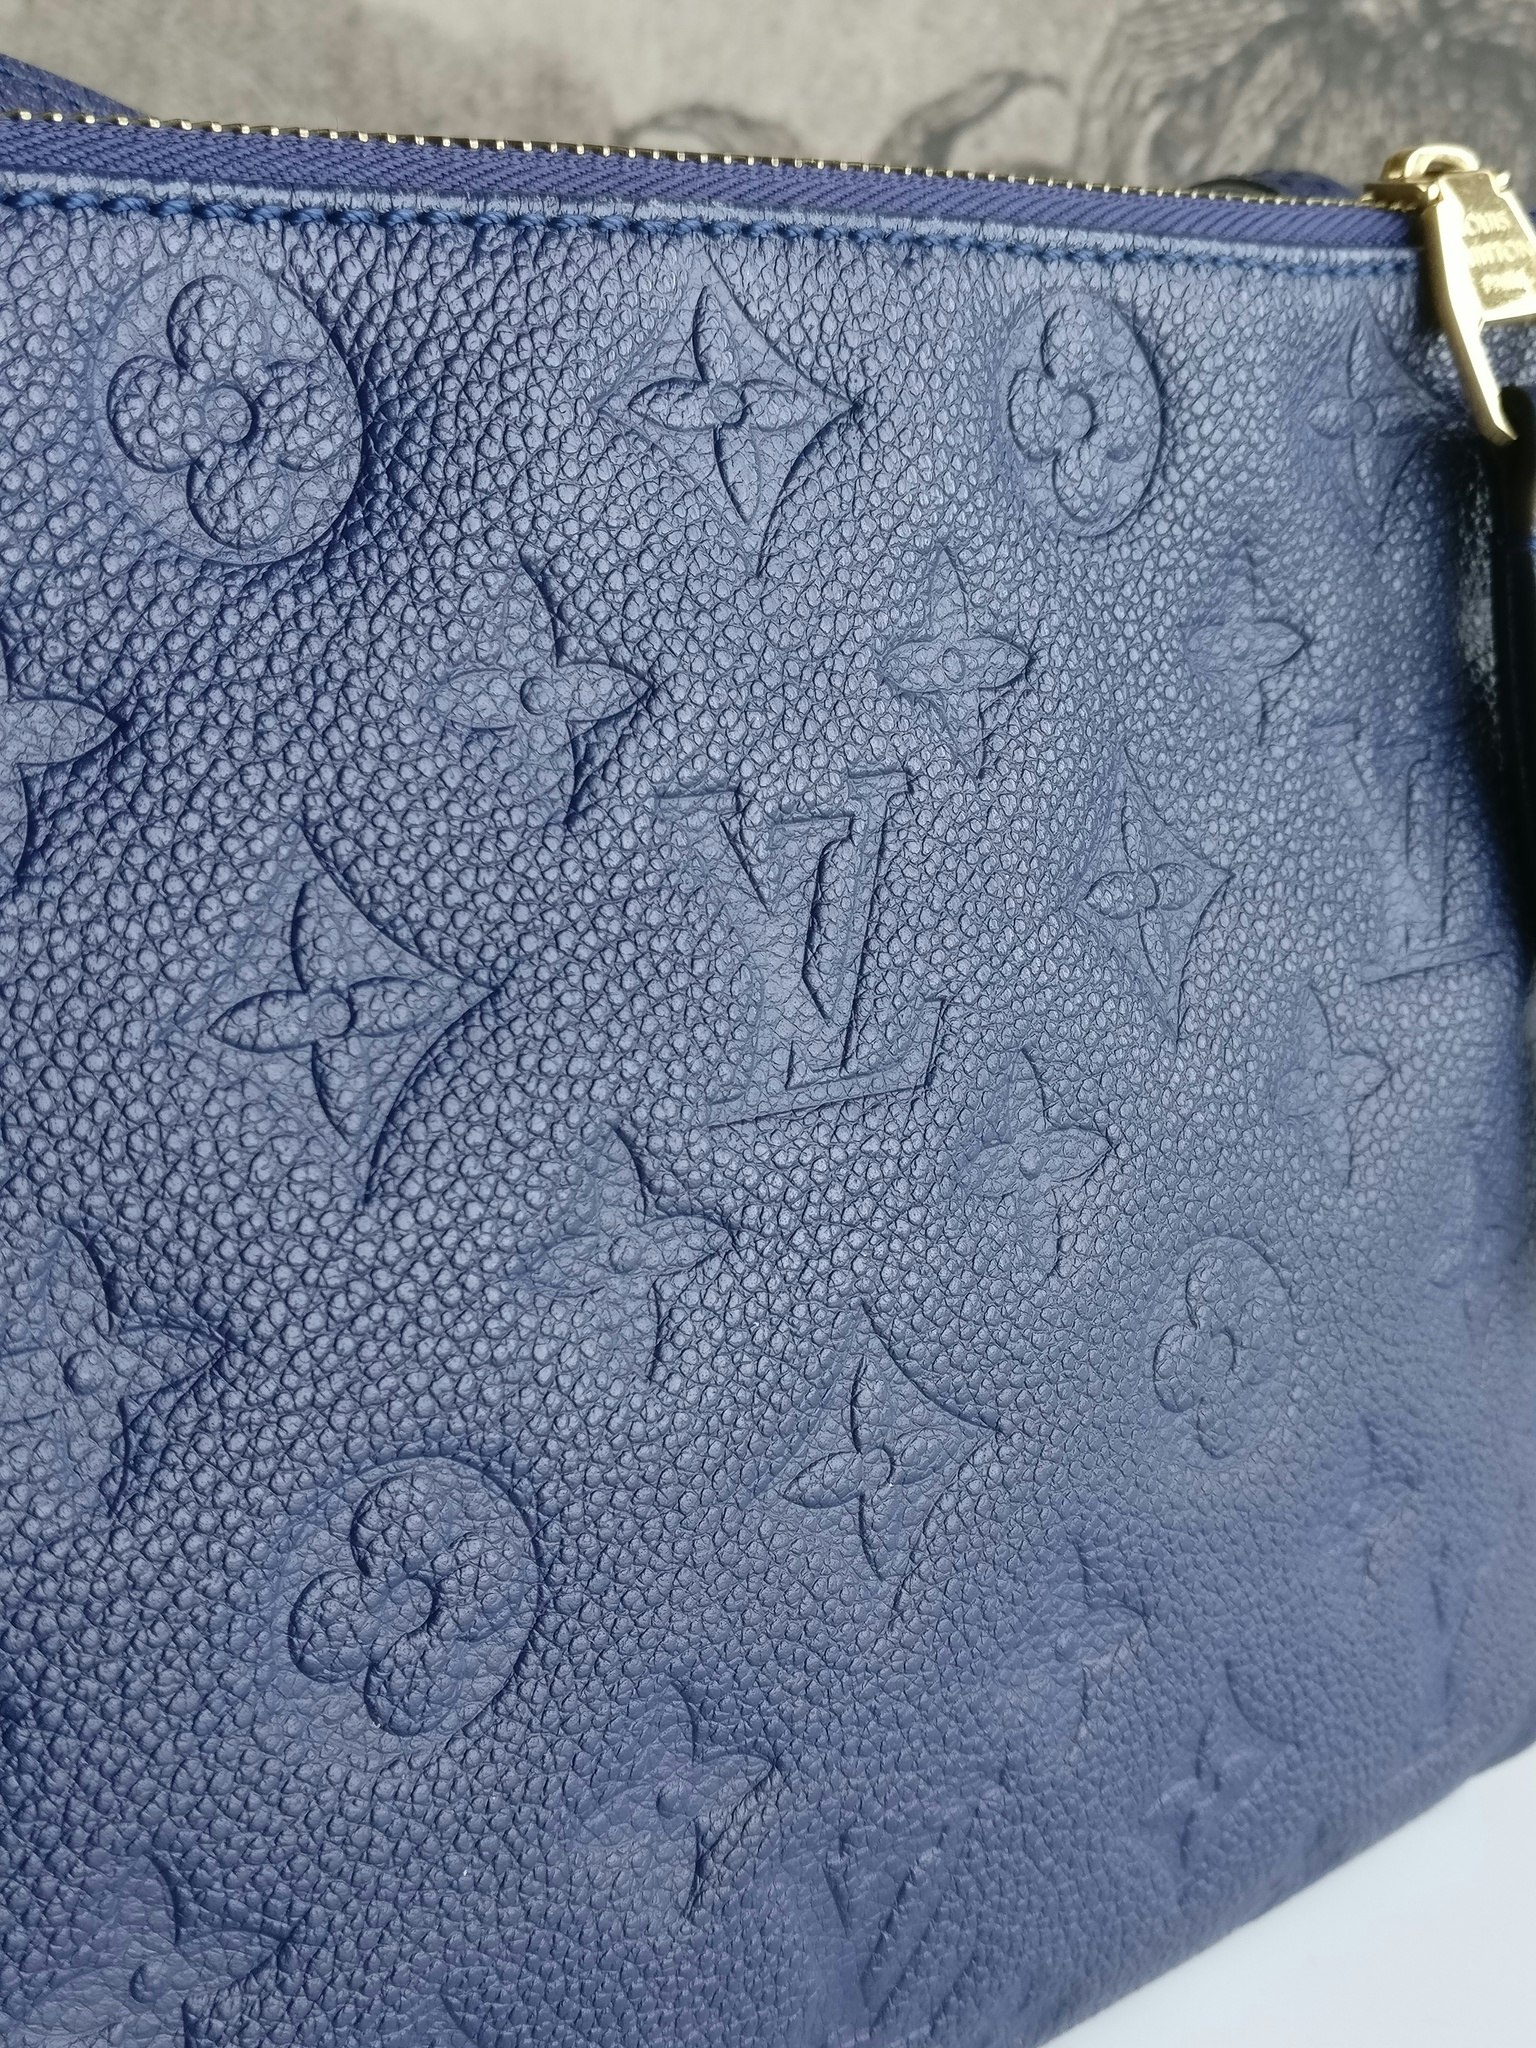 Louis Vuitton Twice Empreinte - Good or Bag